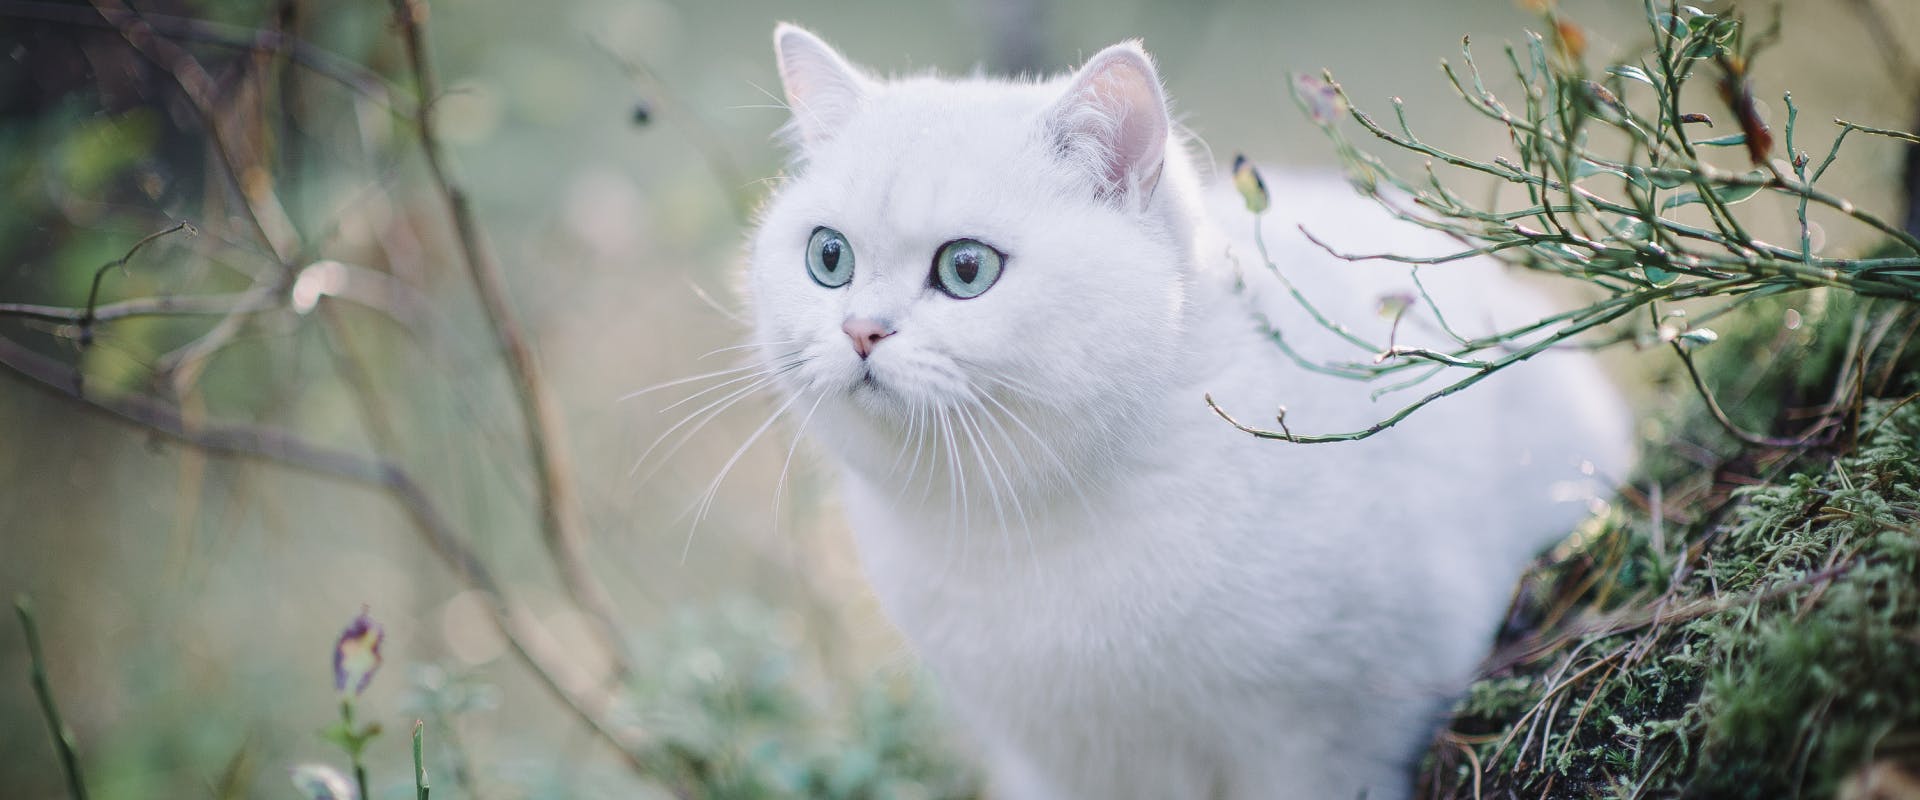 white short haired cat